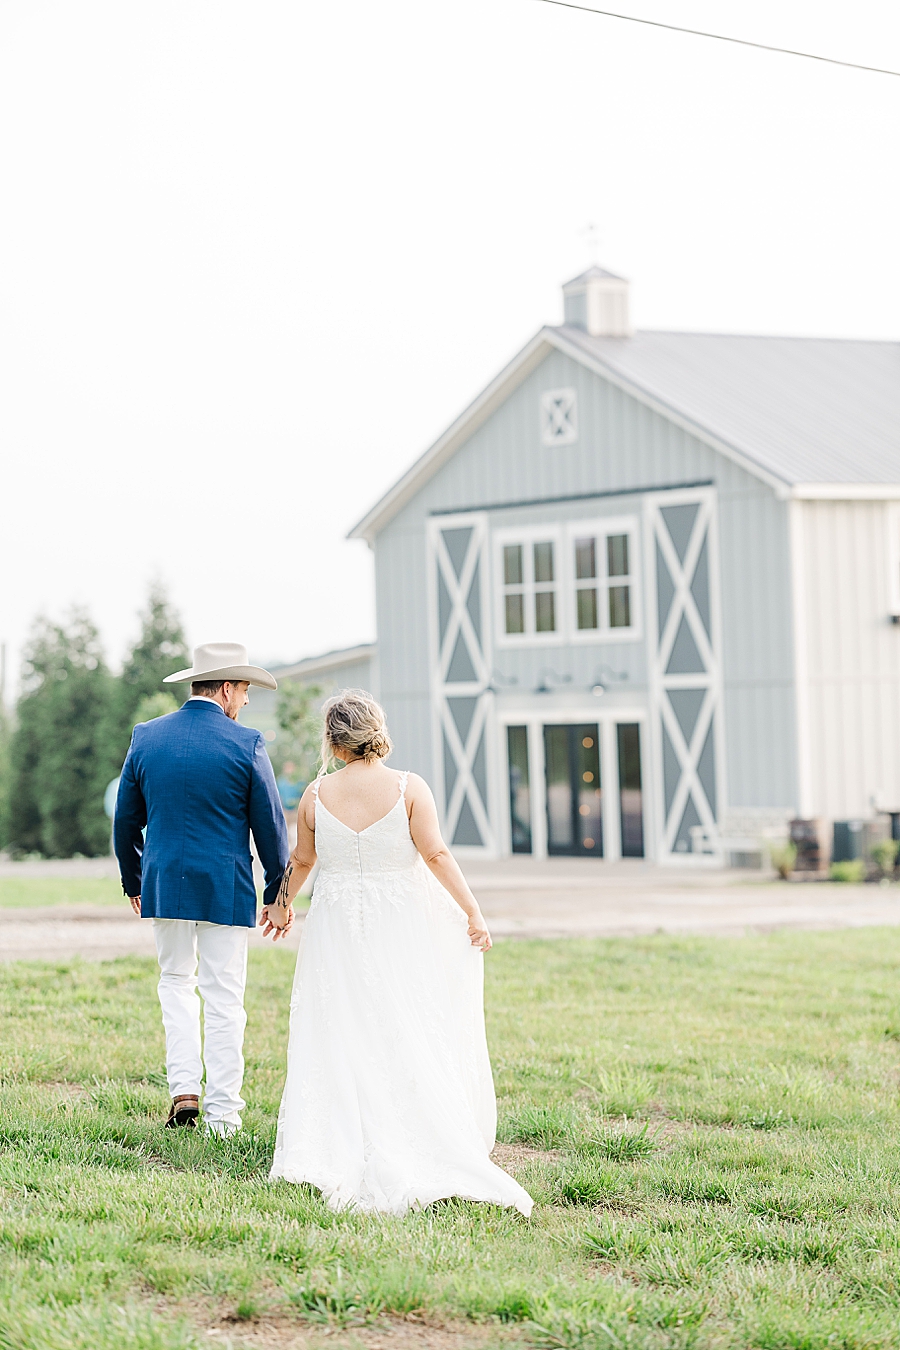 Walking towards the barn at wedding by Amanda May Photos